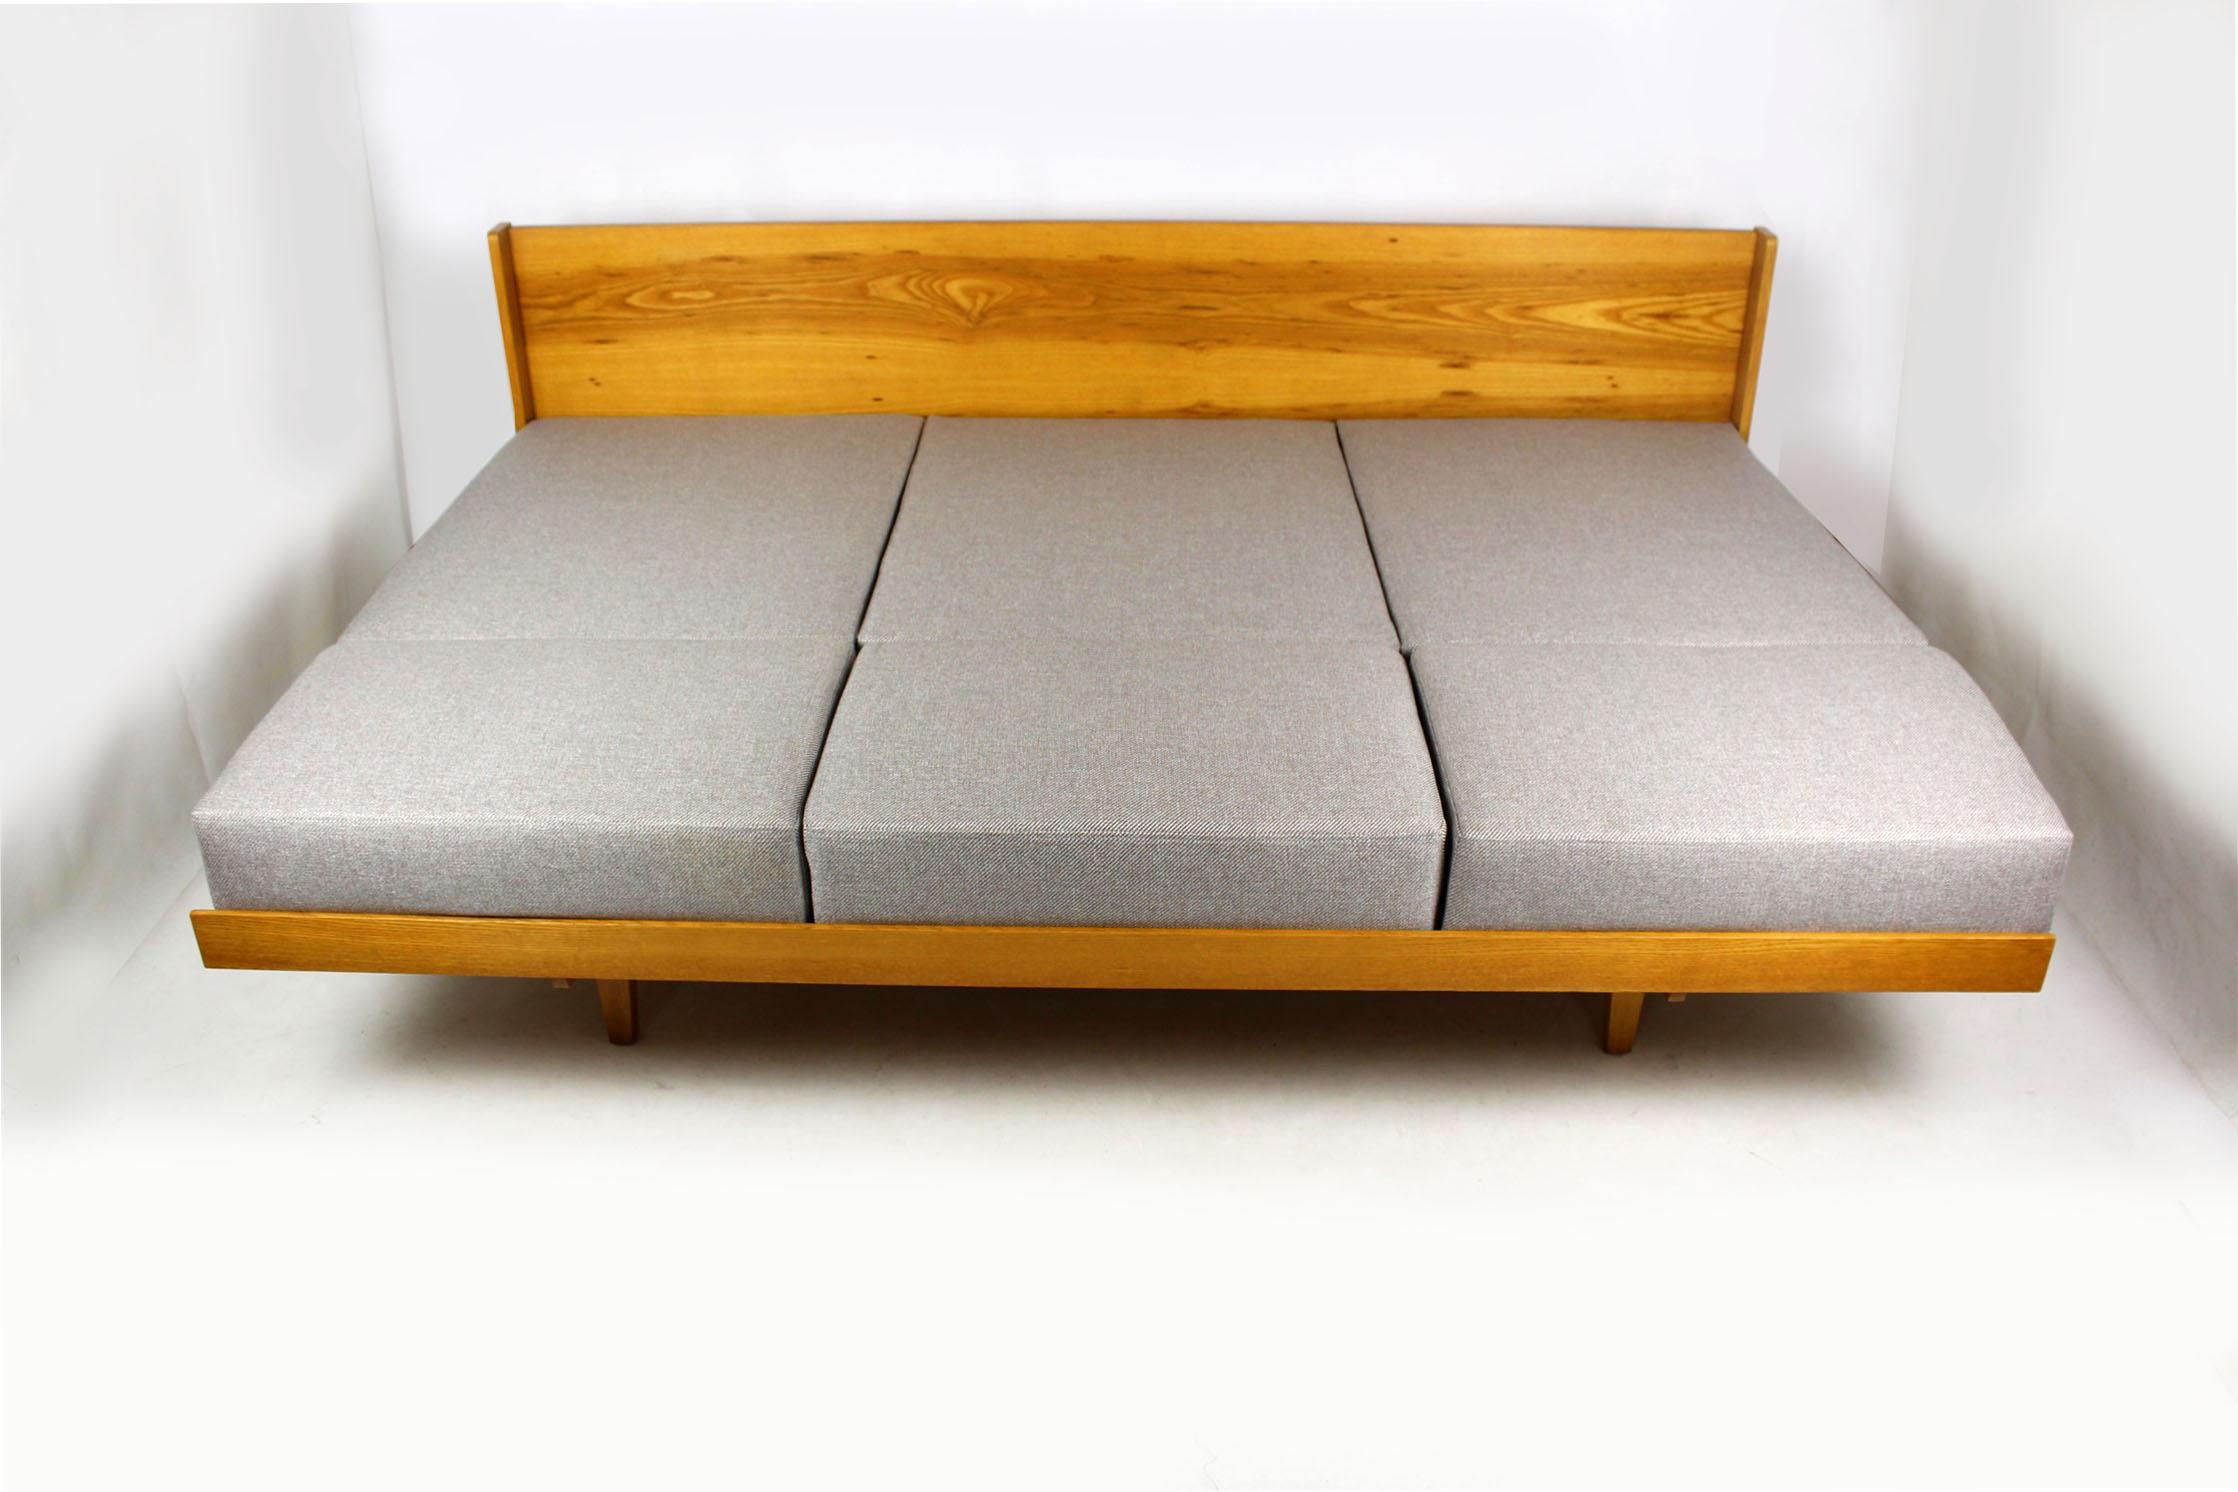 20th Century Midcentury Sofa and Bed from Jitona, 1960s